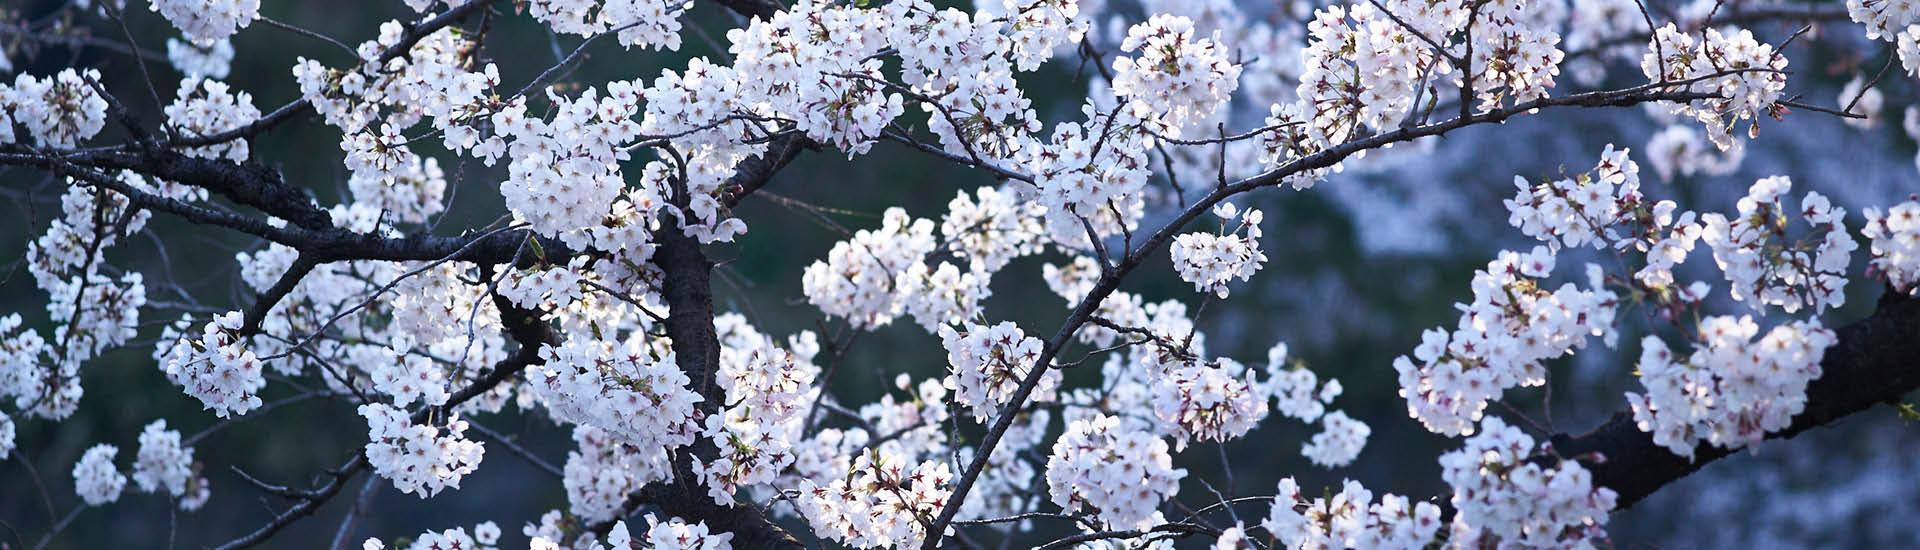 Stories | Sakura La Famosa Floración de los Cerezos en Japón | Articles |  JAPAN HOUSE (São Paulo)